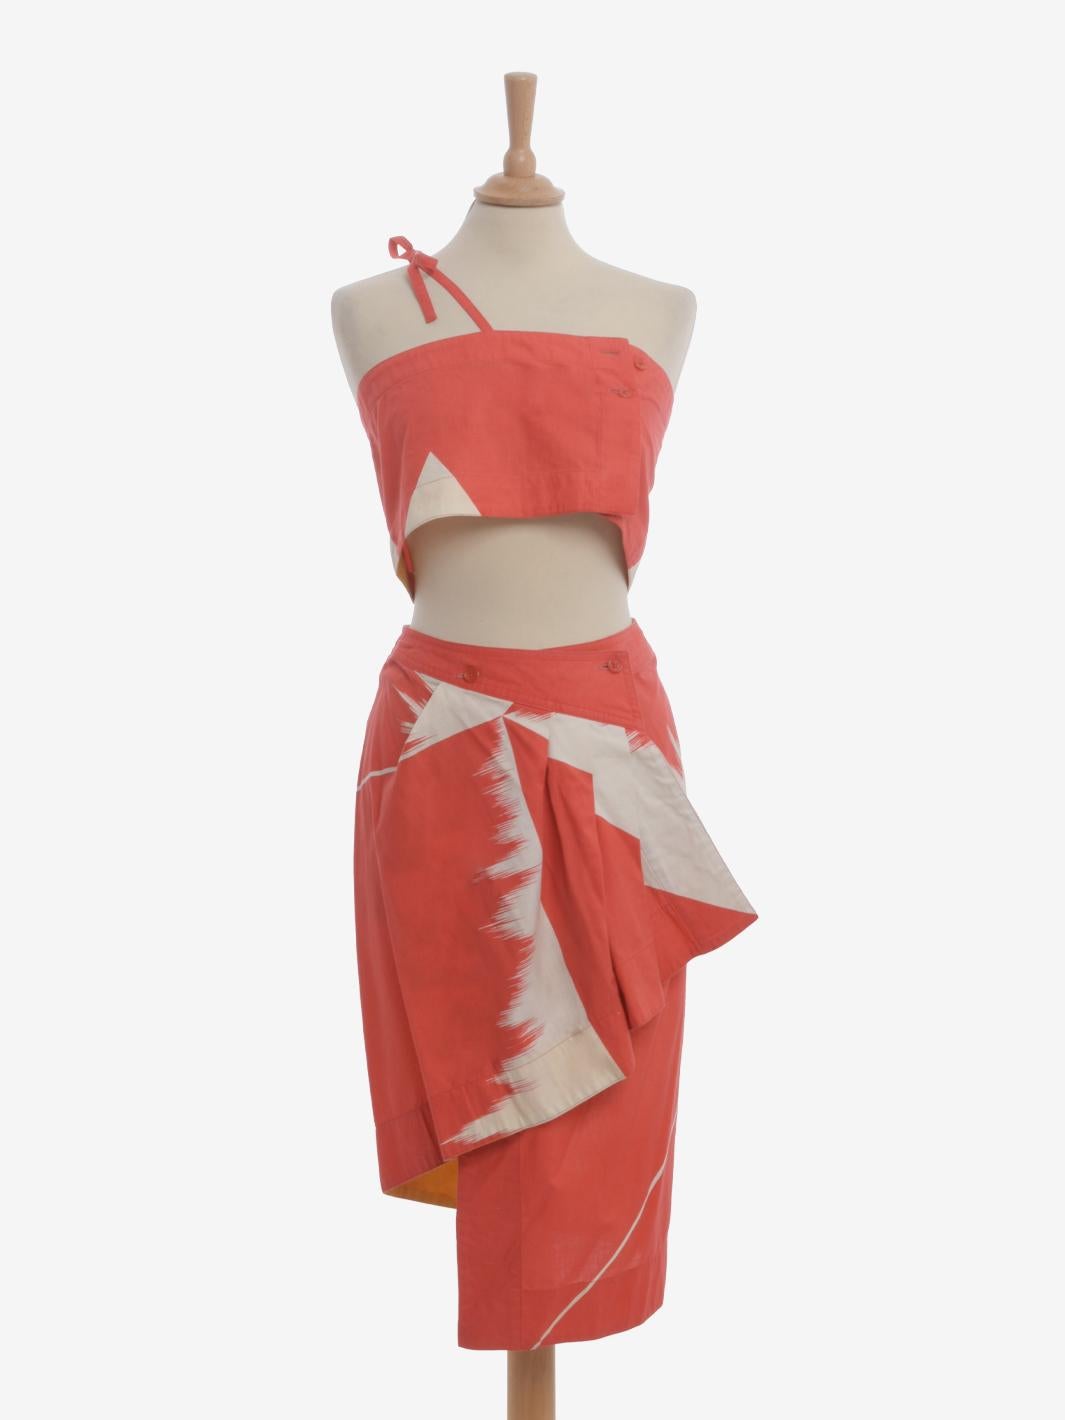 Issey Miyake Suit est un tailleur deux pièces appartenant probablement à la collection de printemps de la fin des années 1970. Le vêtement se compose d'un haut bandeau avec fermeture à deux boutons et bretelles simples croisées et d'une jupe crayon